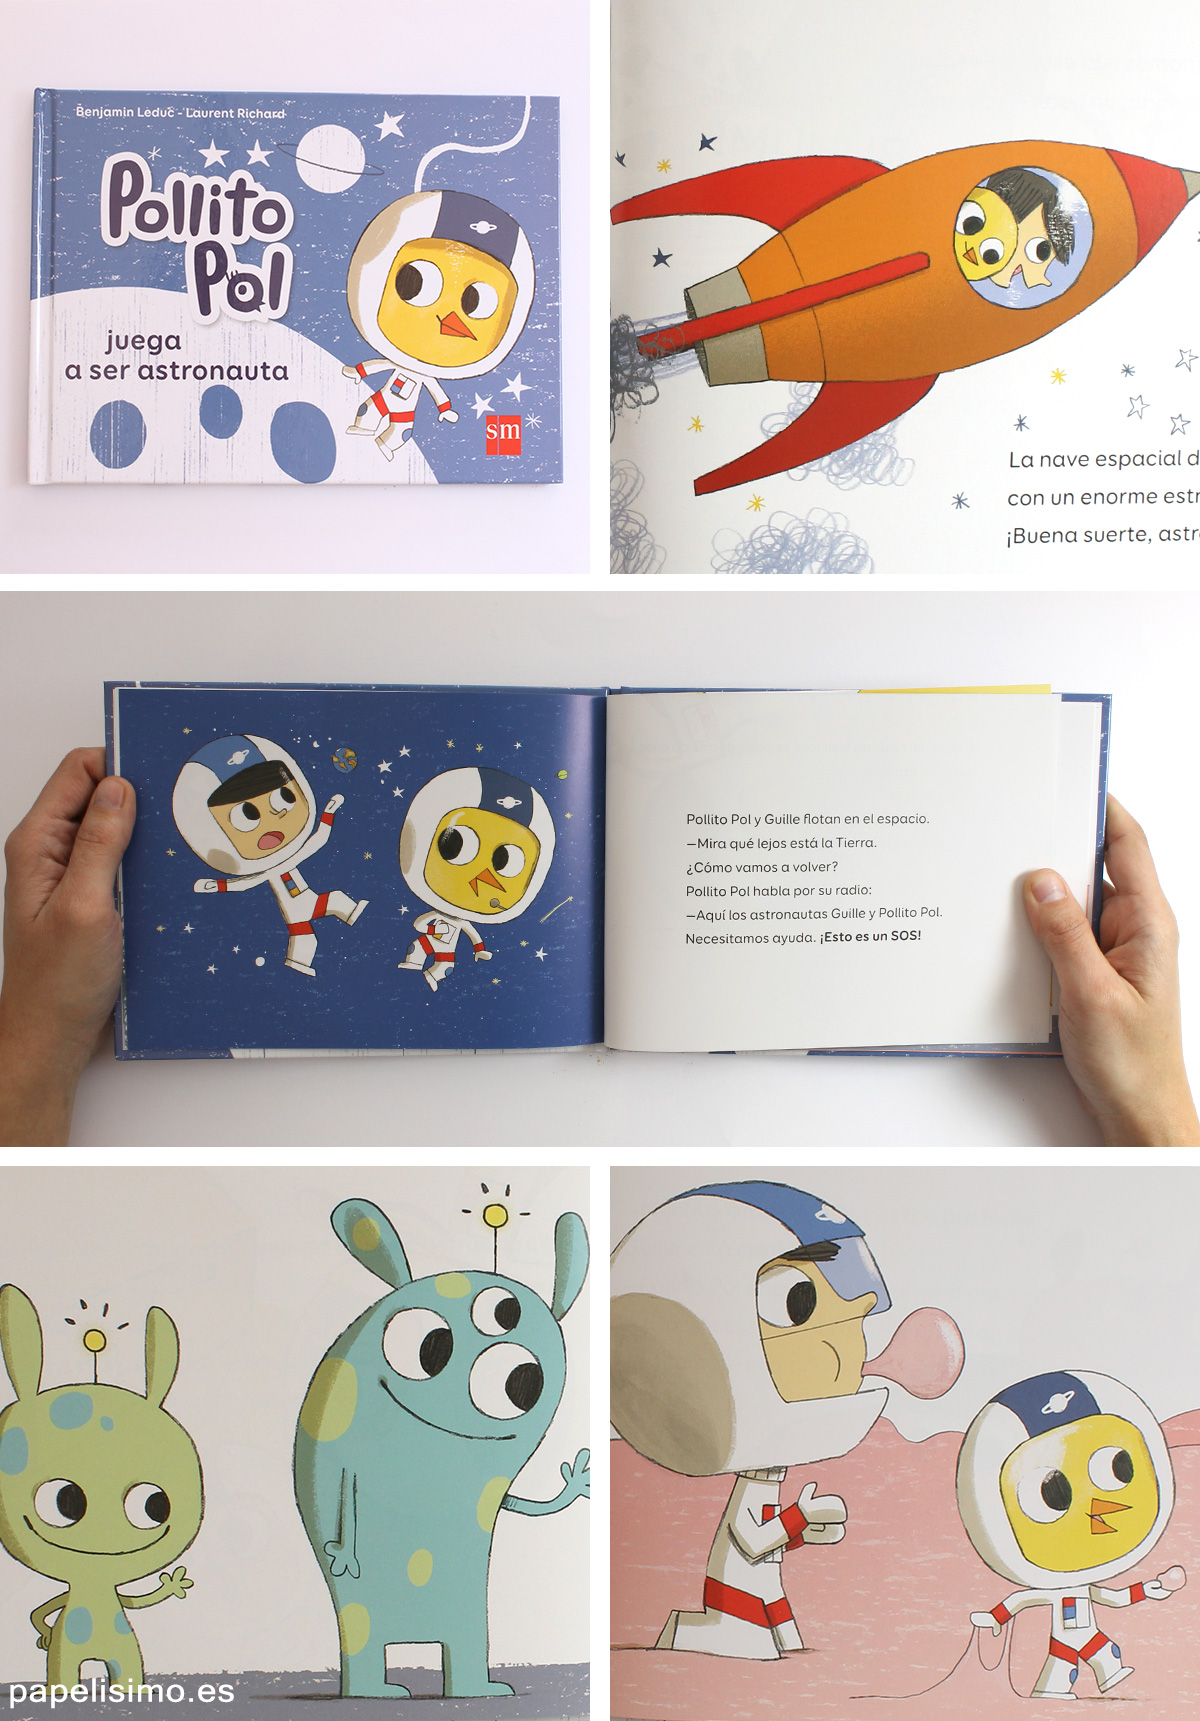 Pollito-Pol-juega-a-ser-astronauta-Libros-para-niños-profesiones